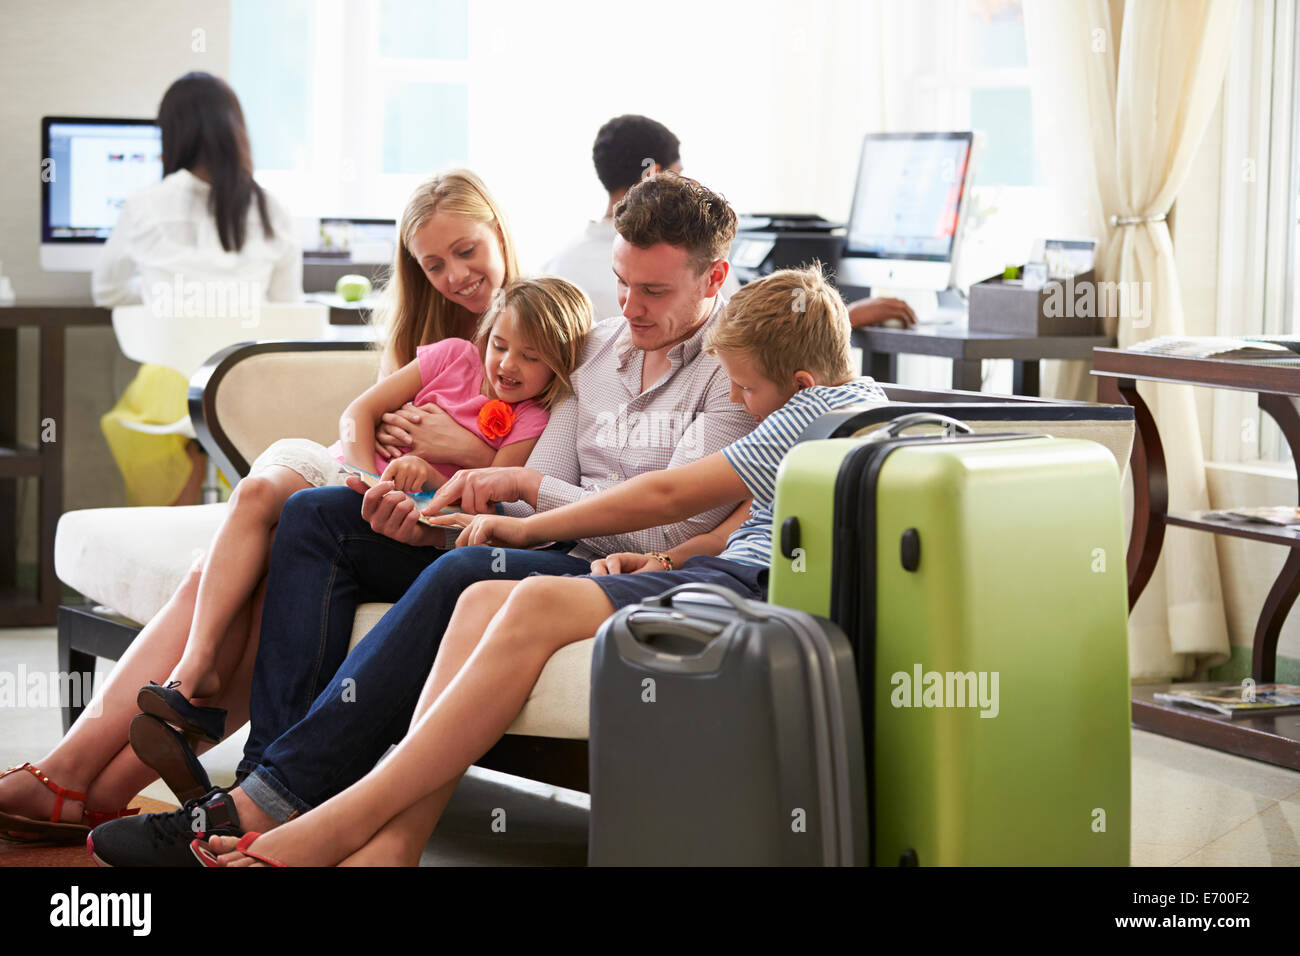 Familie In Hotellobby Blick auf Digital-Tablette Stockfoto